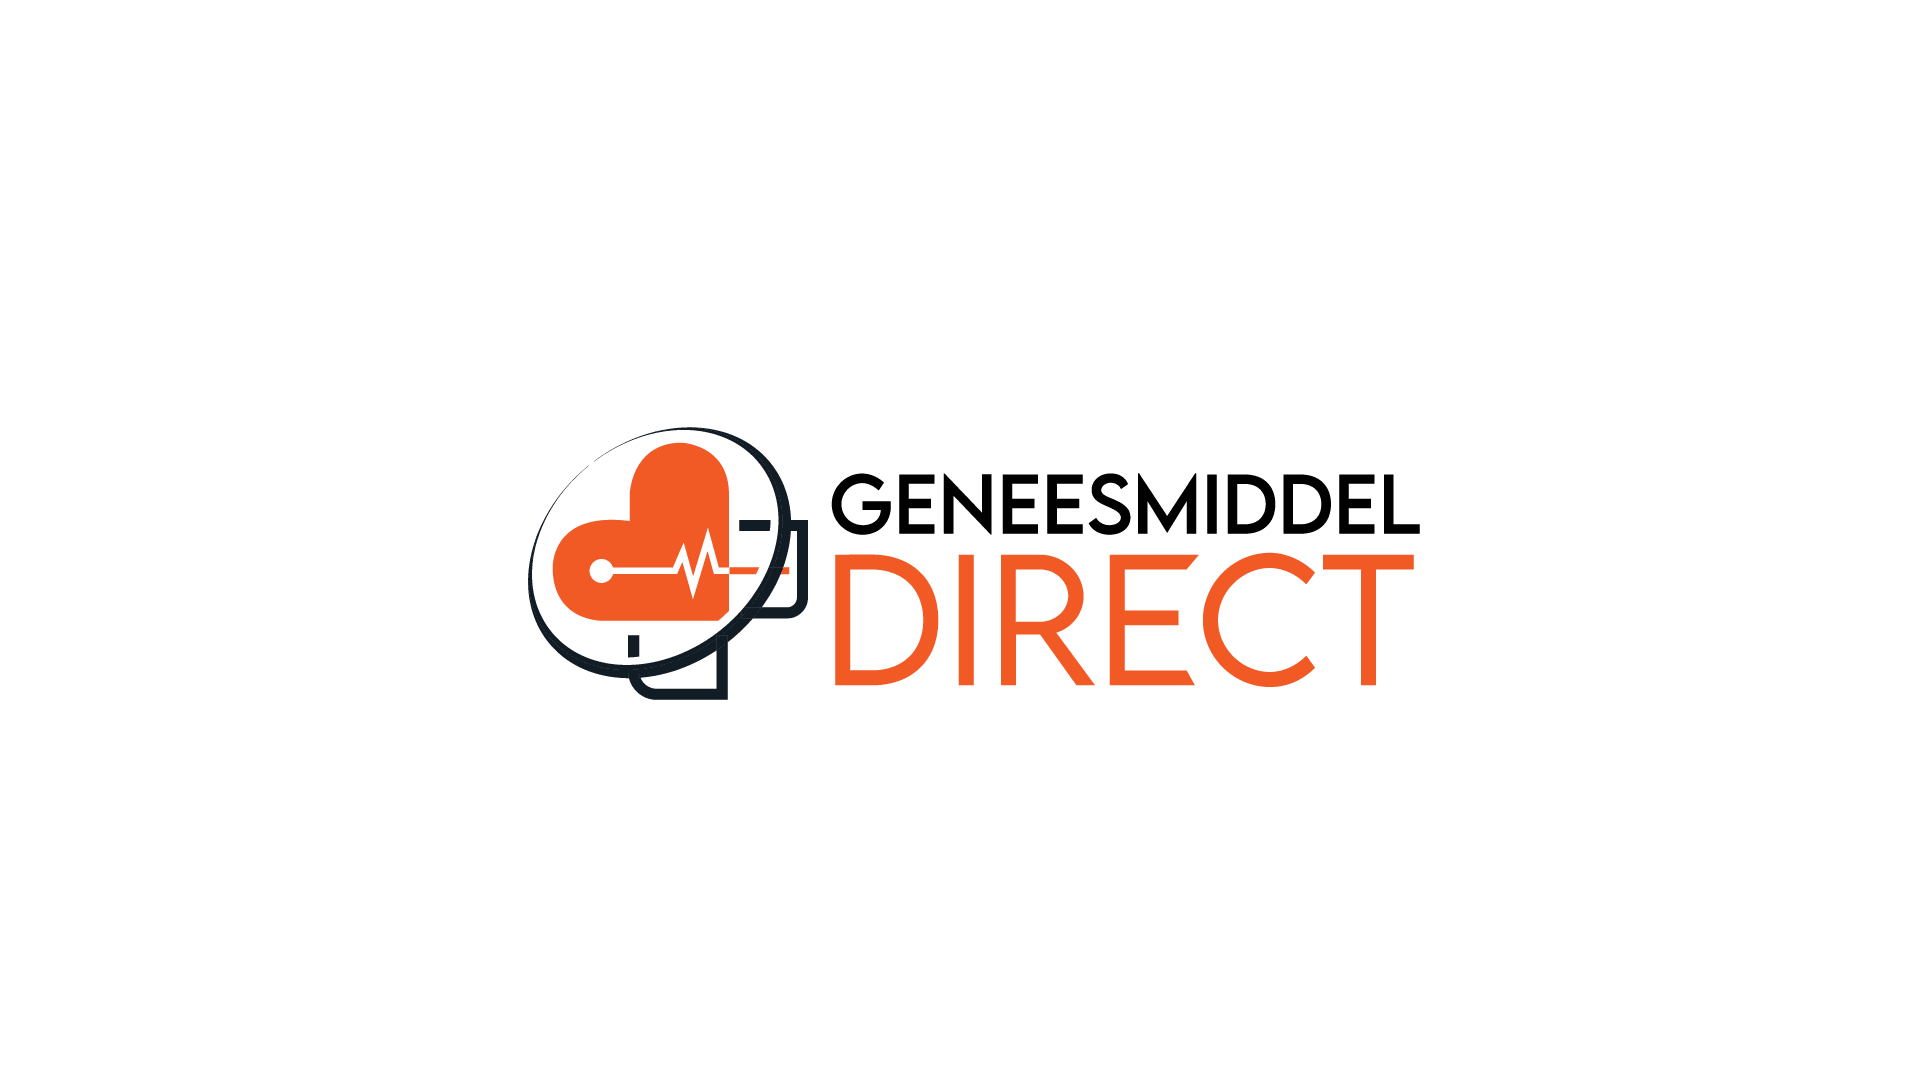 Geneesmiddel Direct